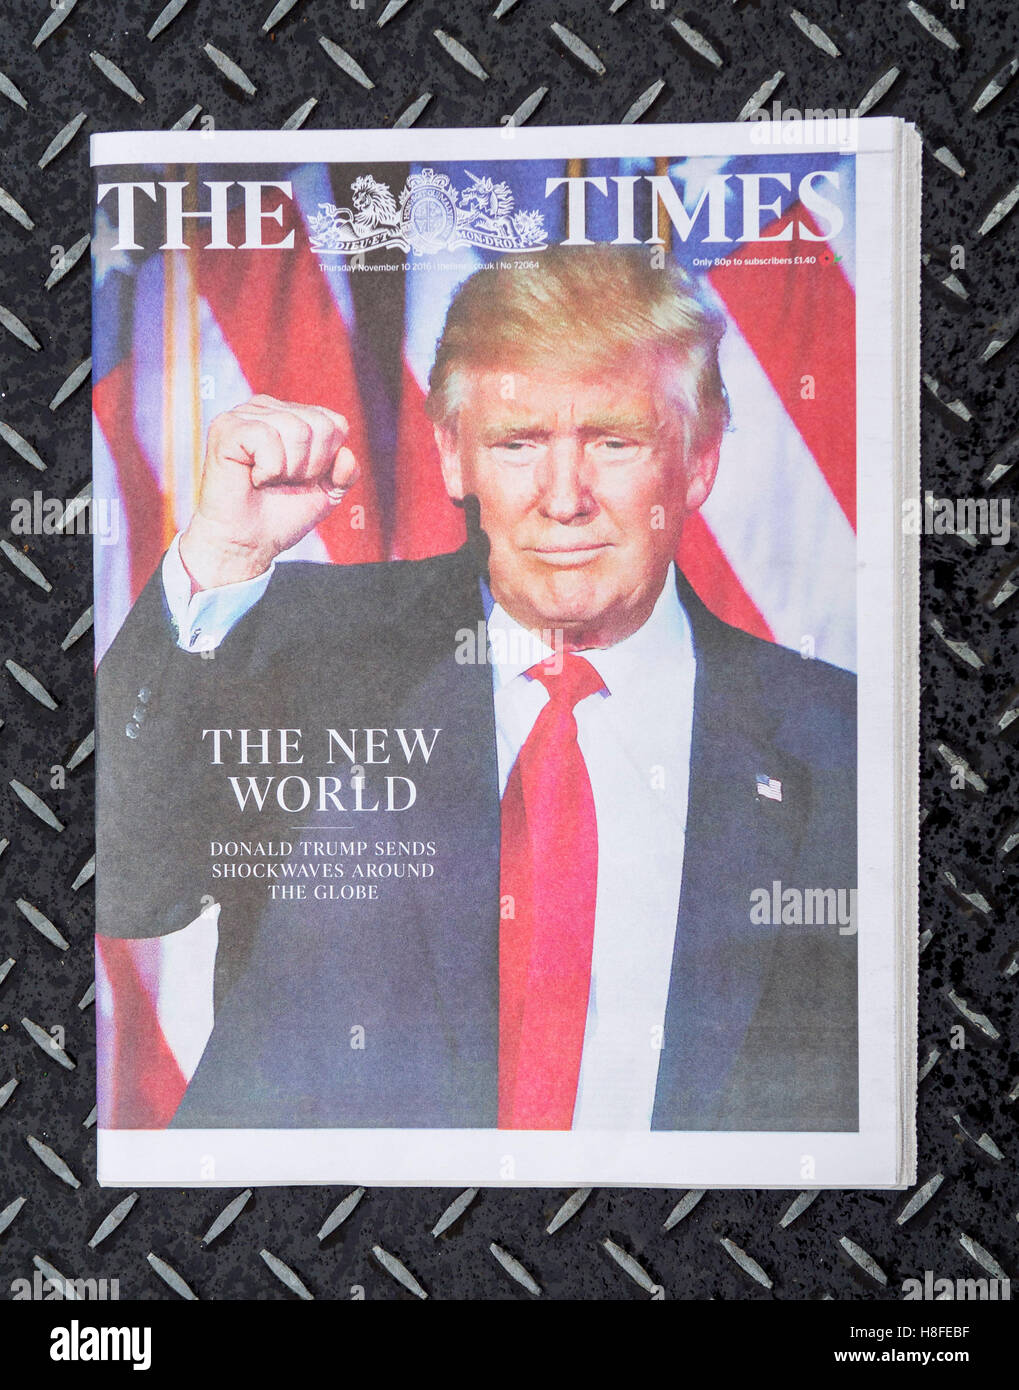 Die Titelseite der Times berichtet über das Ergebnis der US-Präsidentschaftswahl, in dem Donald Trump zum 45. Präsidenten der Vereinigten Staaten wurde. Stockfoto